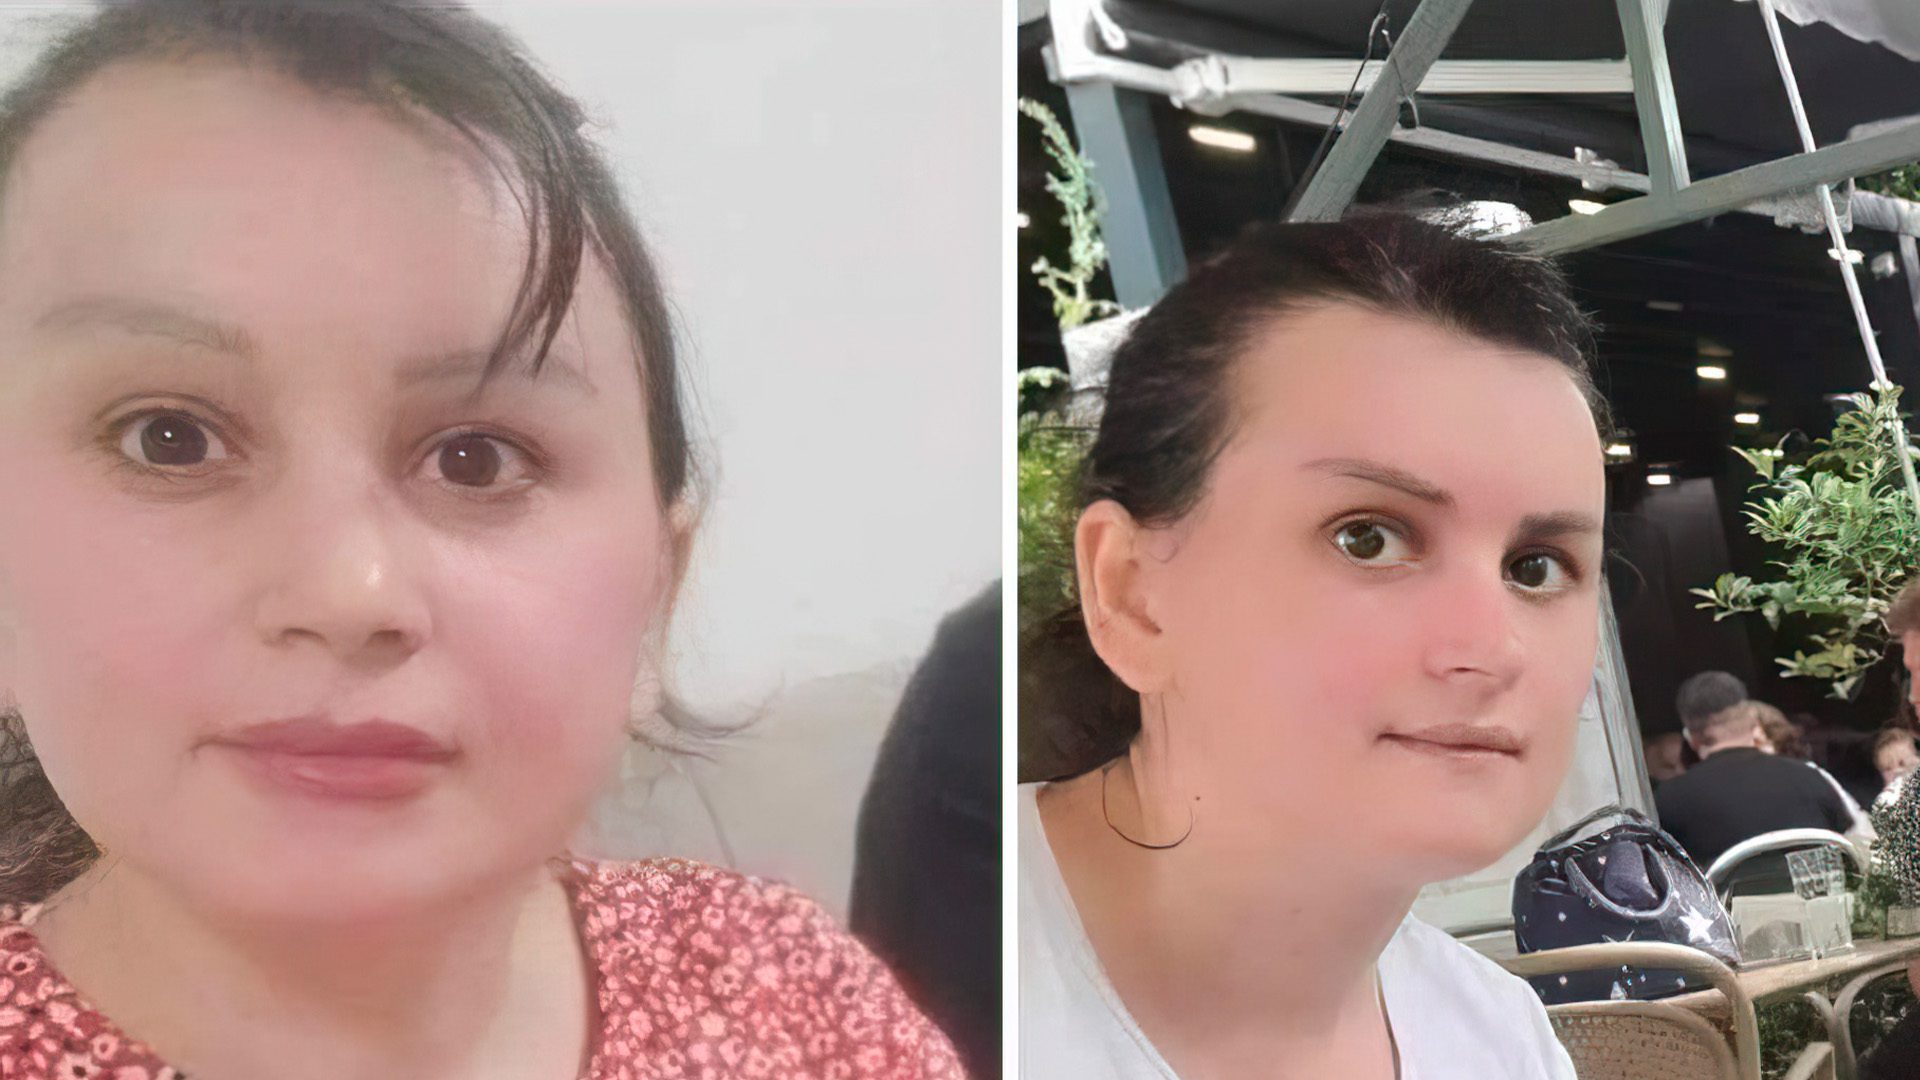 Zhduket 30 vjeçarja nga Ferizaj, familjarët kërkojnë ndihmë për gjetjen e saj